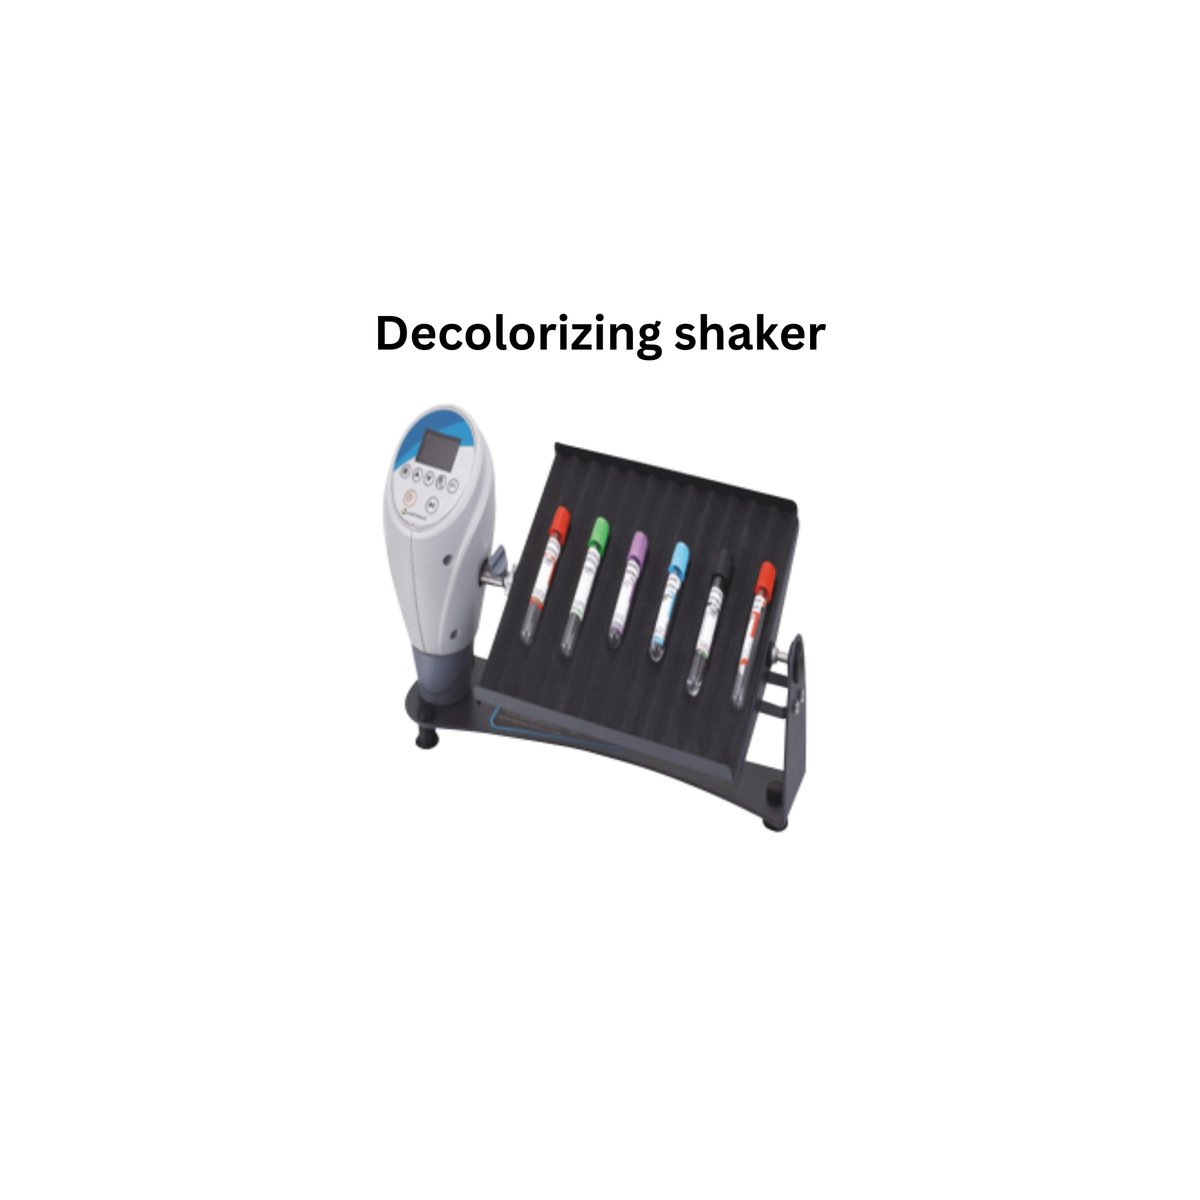 Decolorizing shaker.jpg